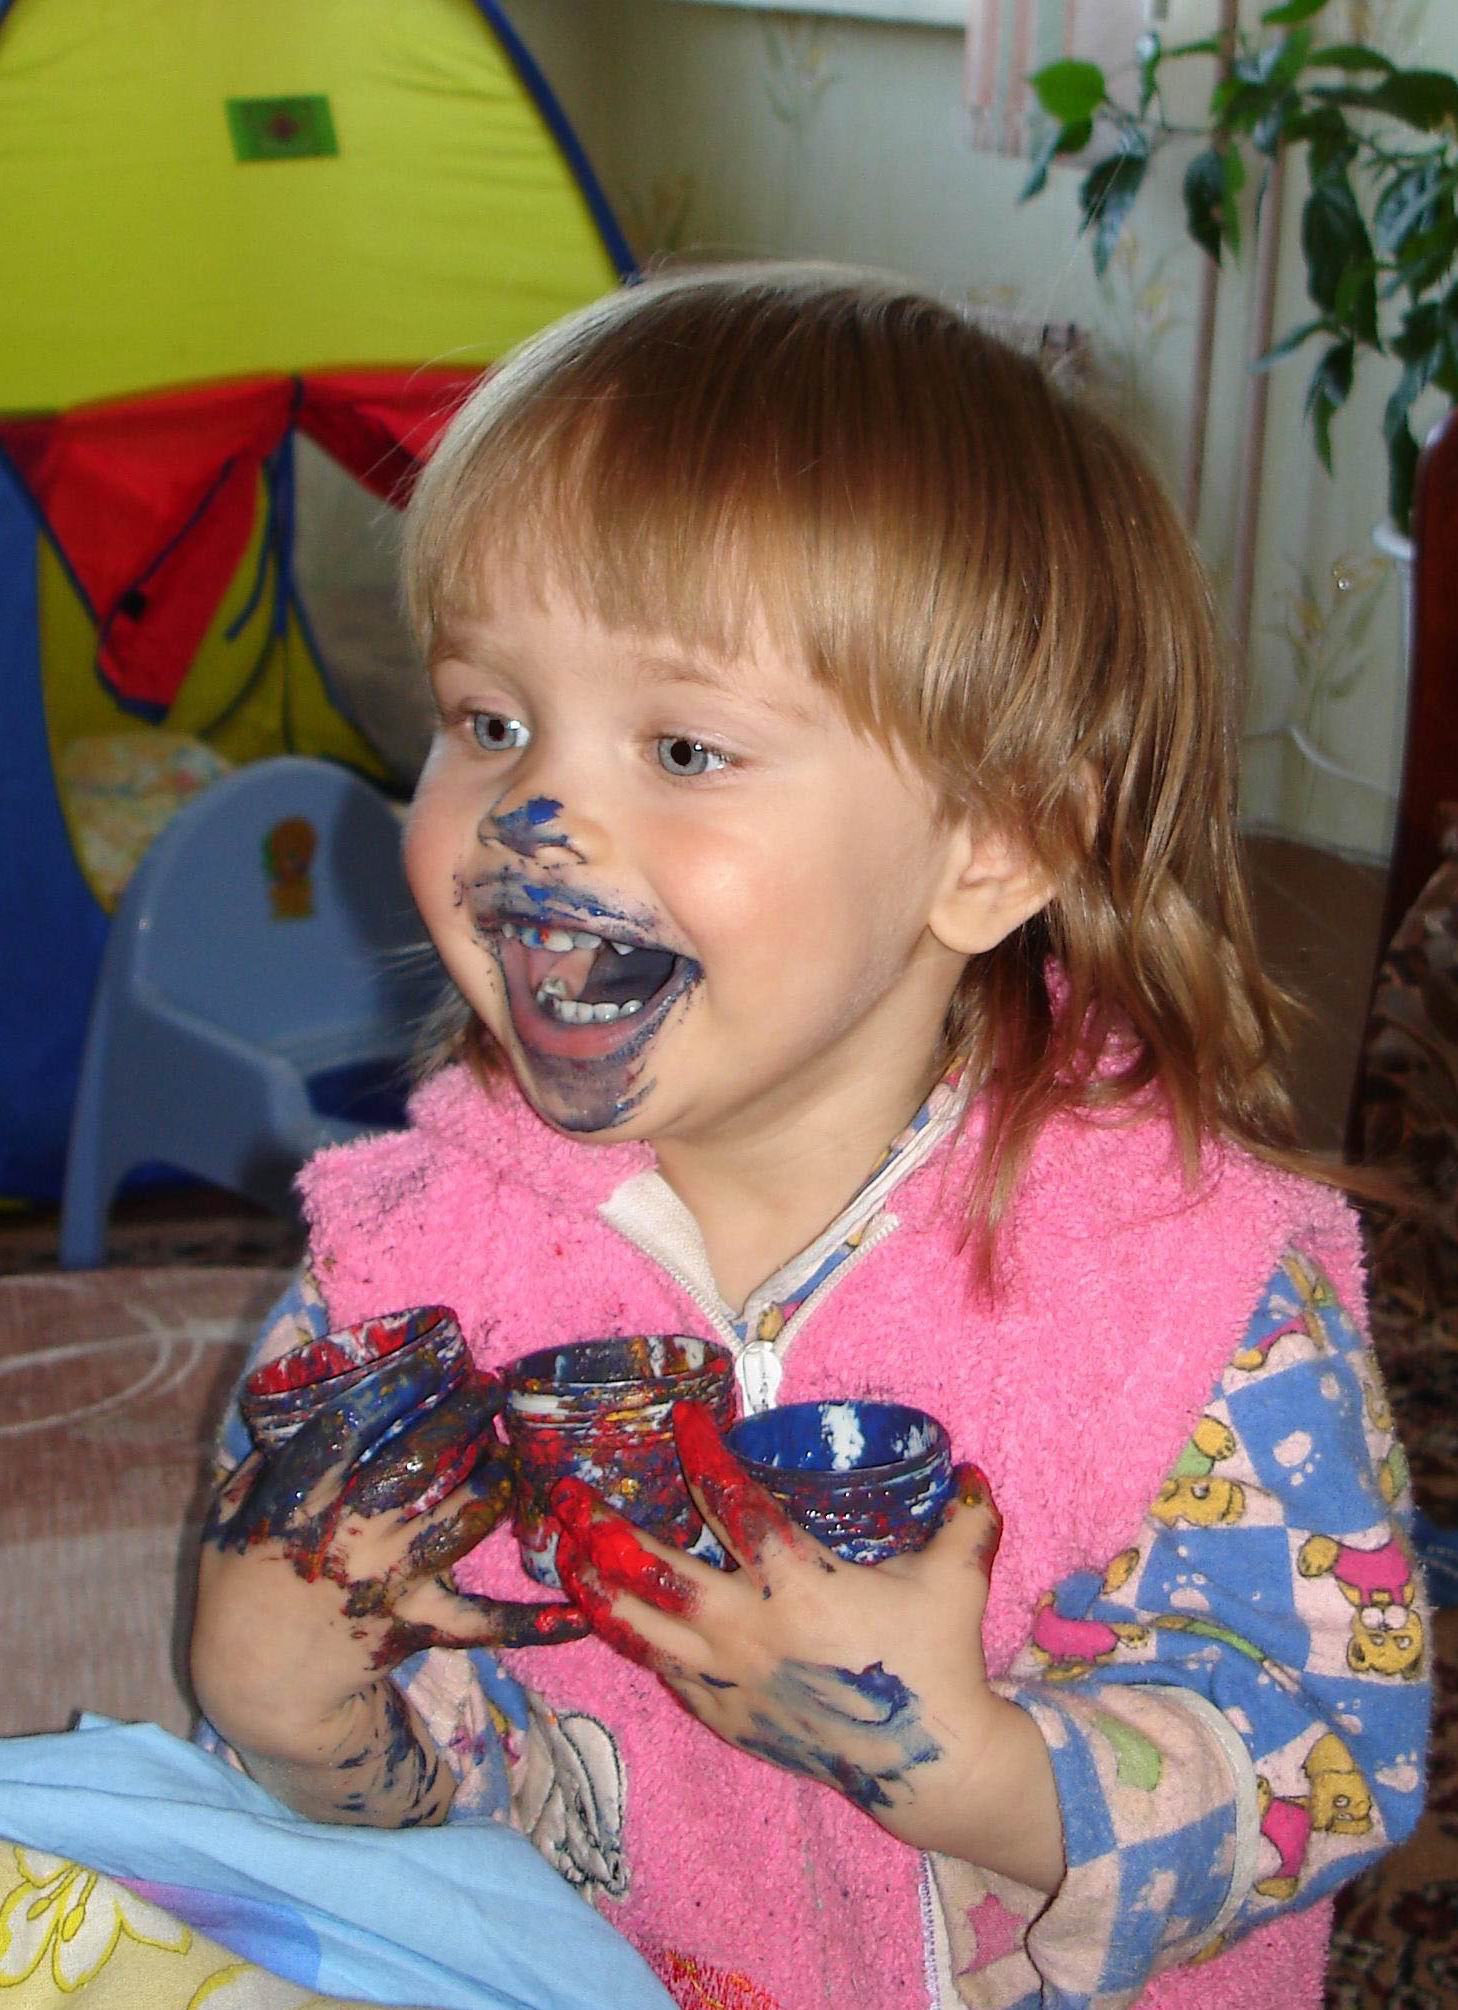 Girl eating paint